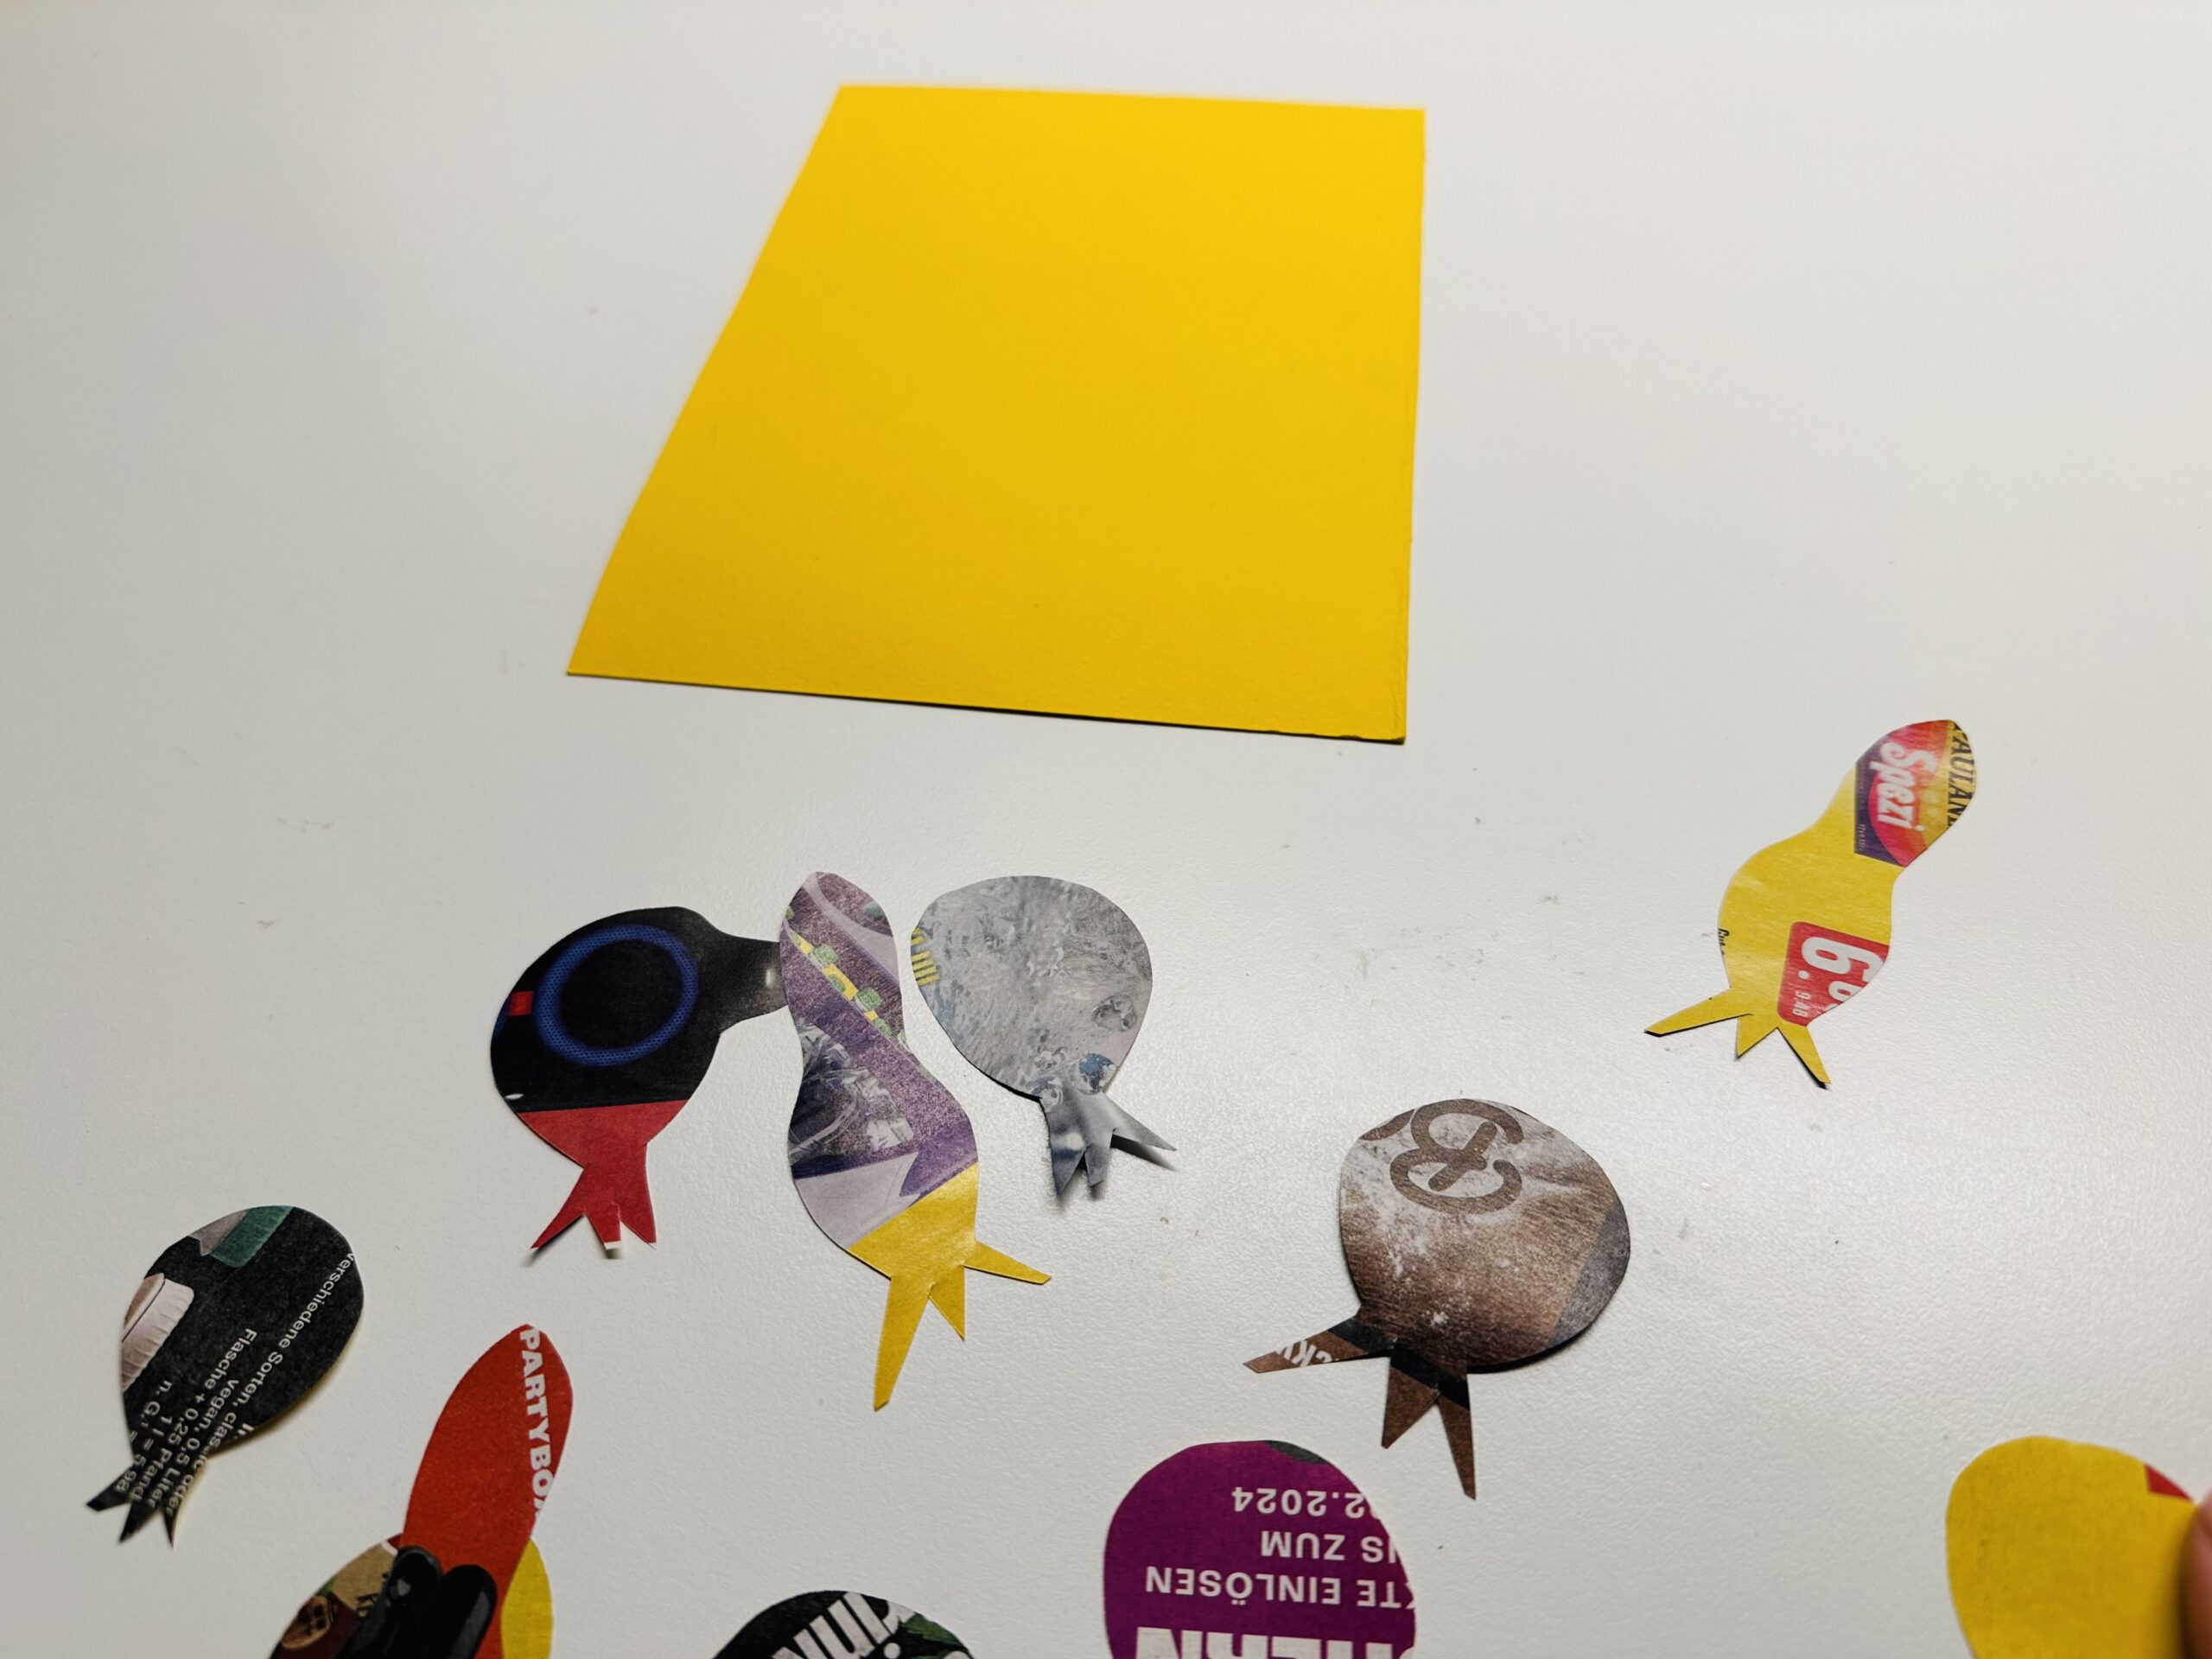 Bild zum Schritt 7 für das Bastel- und DIY-Abenteuer für Kinder: 'Nehmt ein einfarbiges festeres Papier. Z.B. ein DIN A5 Blatt...'